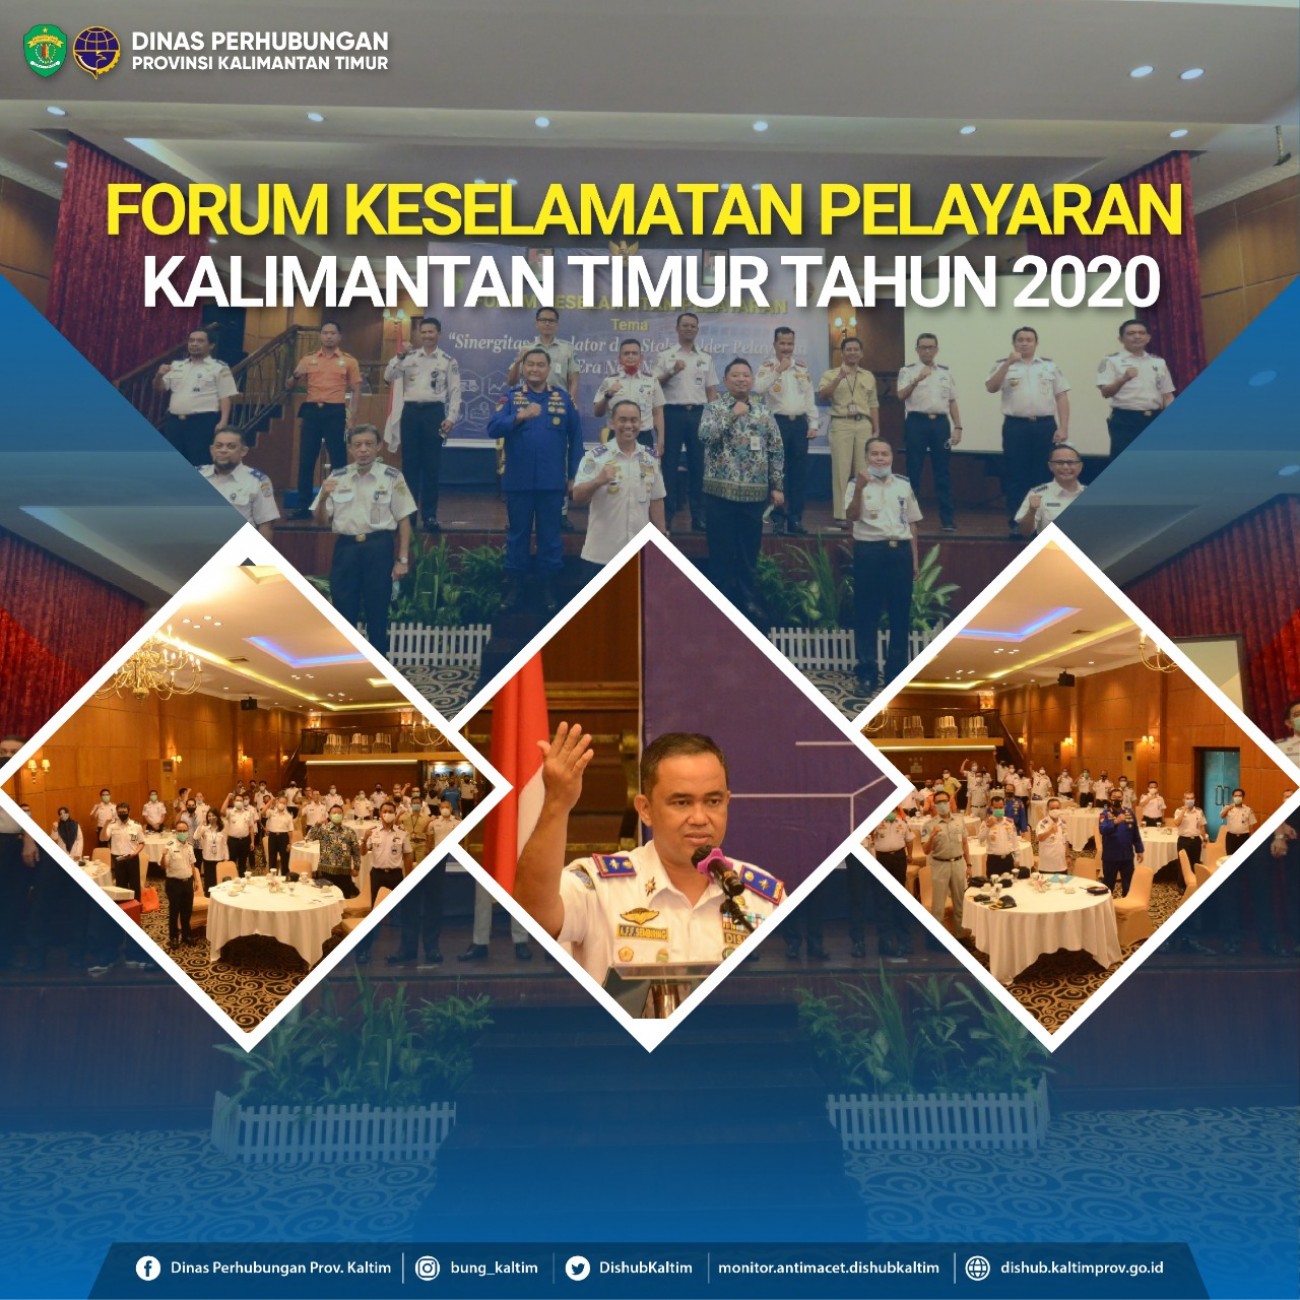 Forum Keselamatan Pelayaran Kalimantan Timur Tahun 2020 